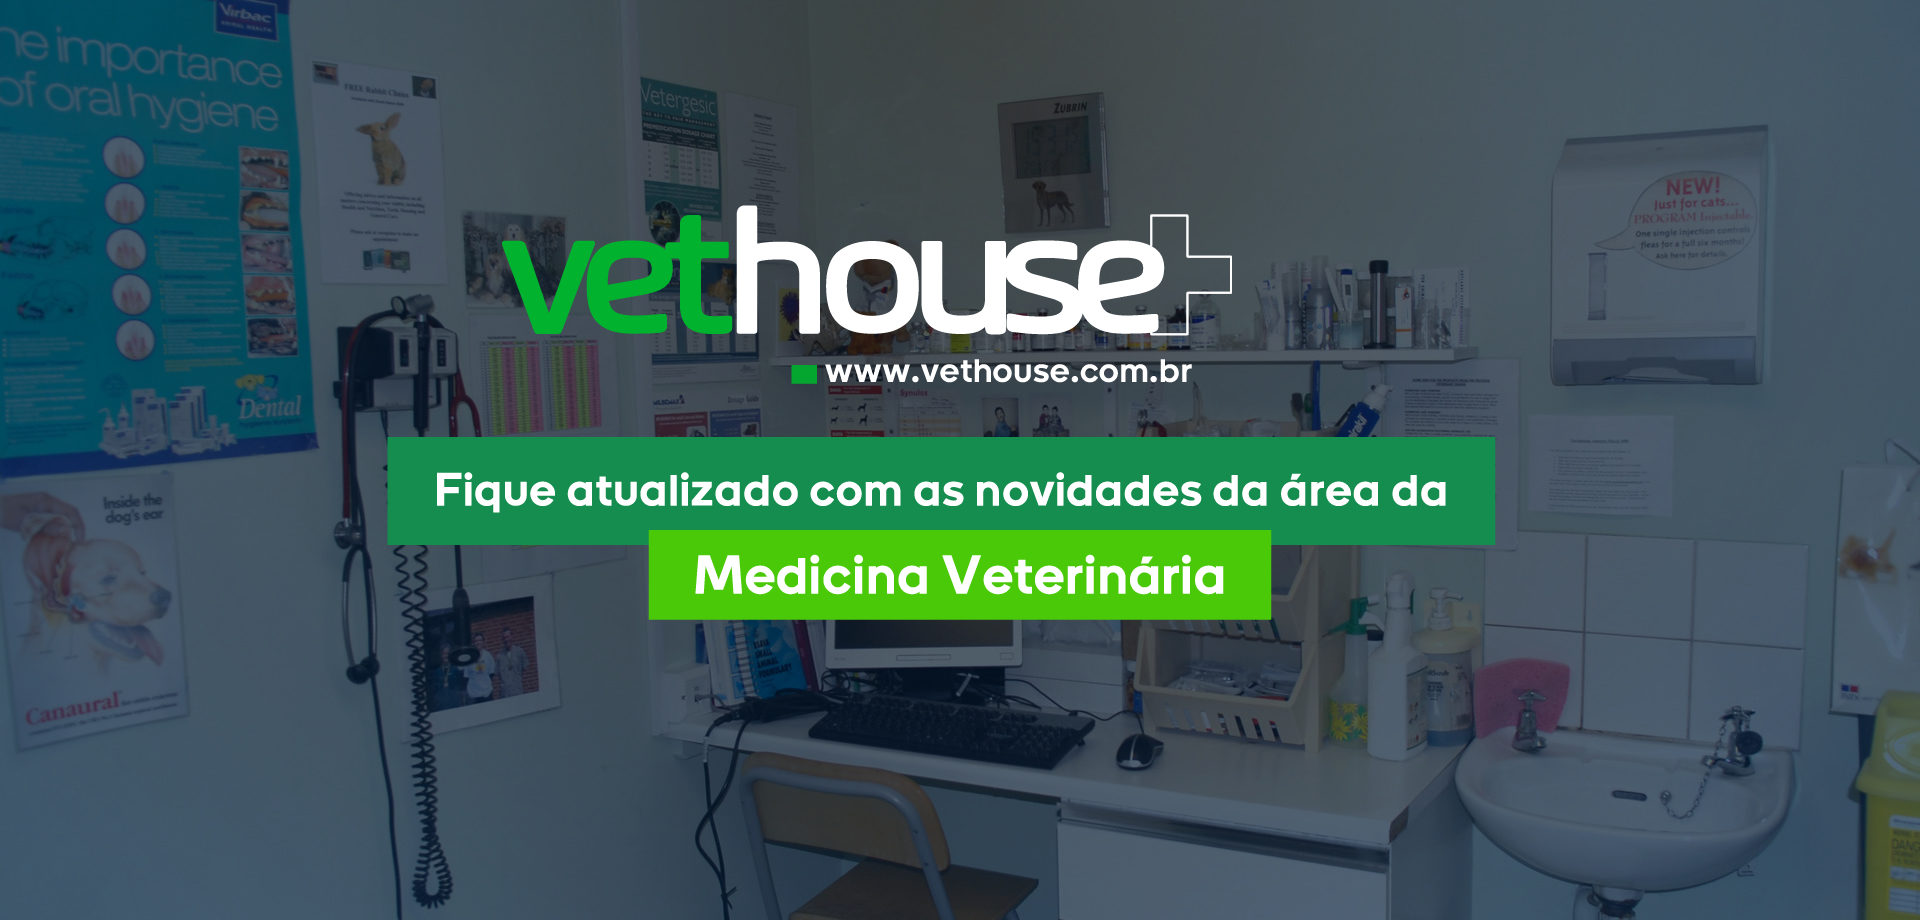 Vet House | Clipping Agro-Veterinário